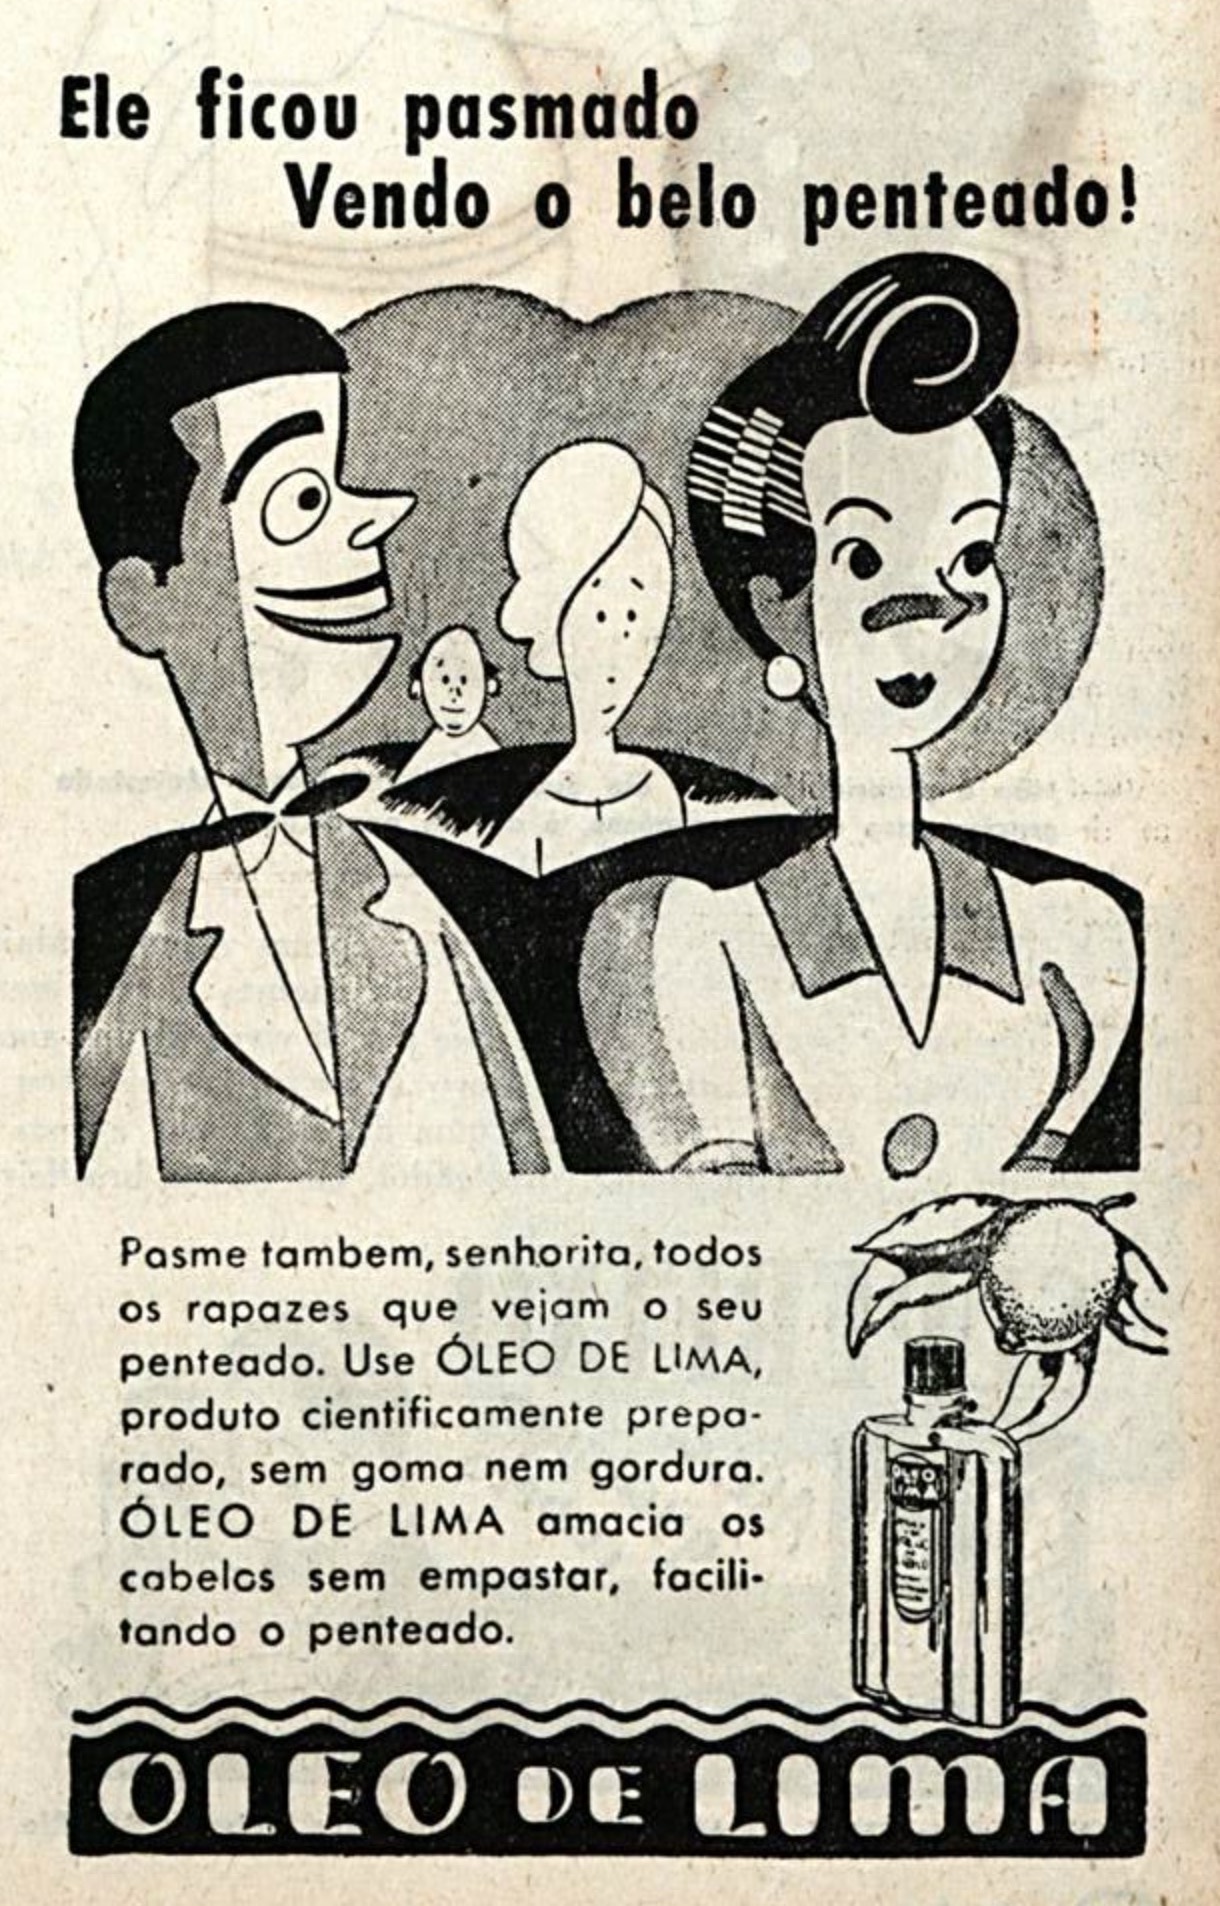 Campanha de 1960 apresentando os benefícios do Óleo de Lima para os cabelos